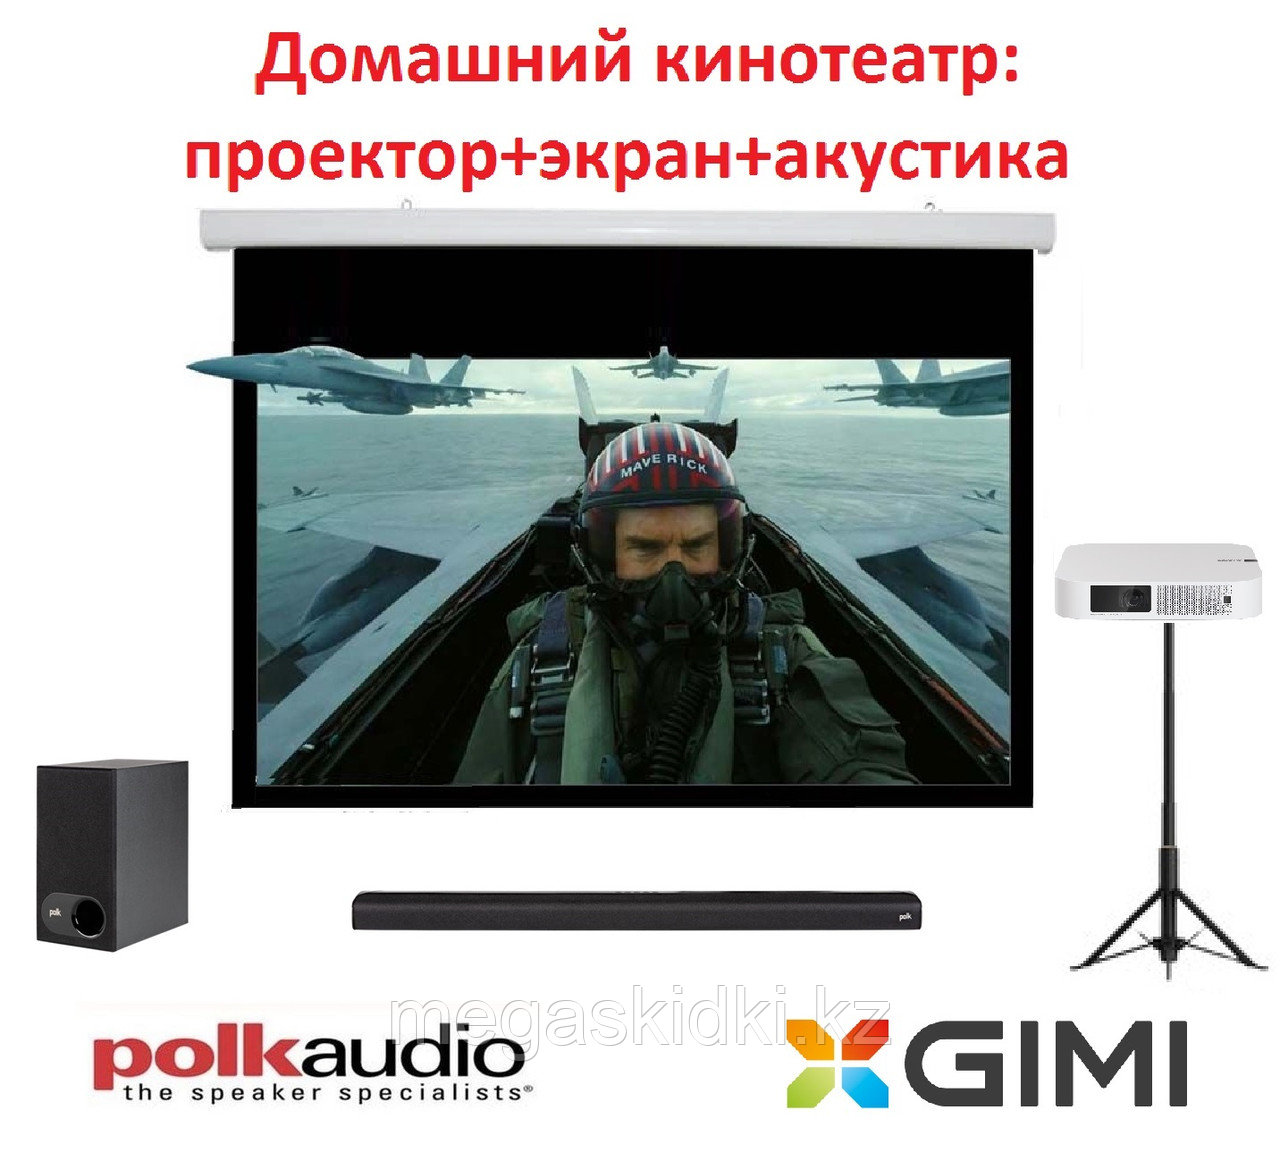 Комплект «Домашний кинотеатр базовый: XGIMI и Polk Audio"